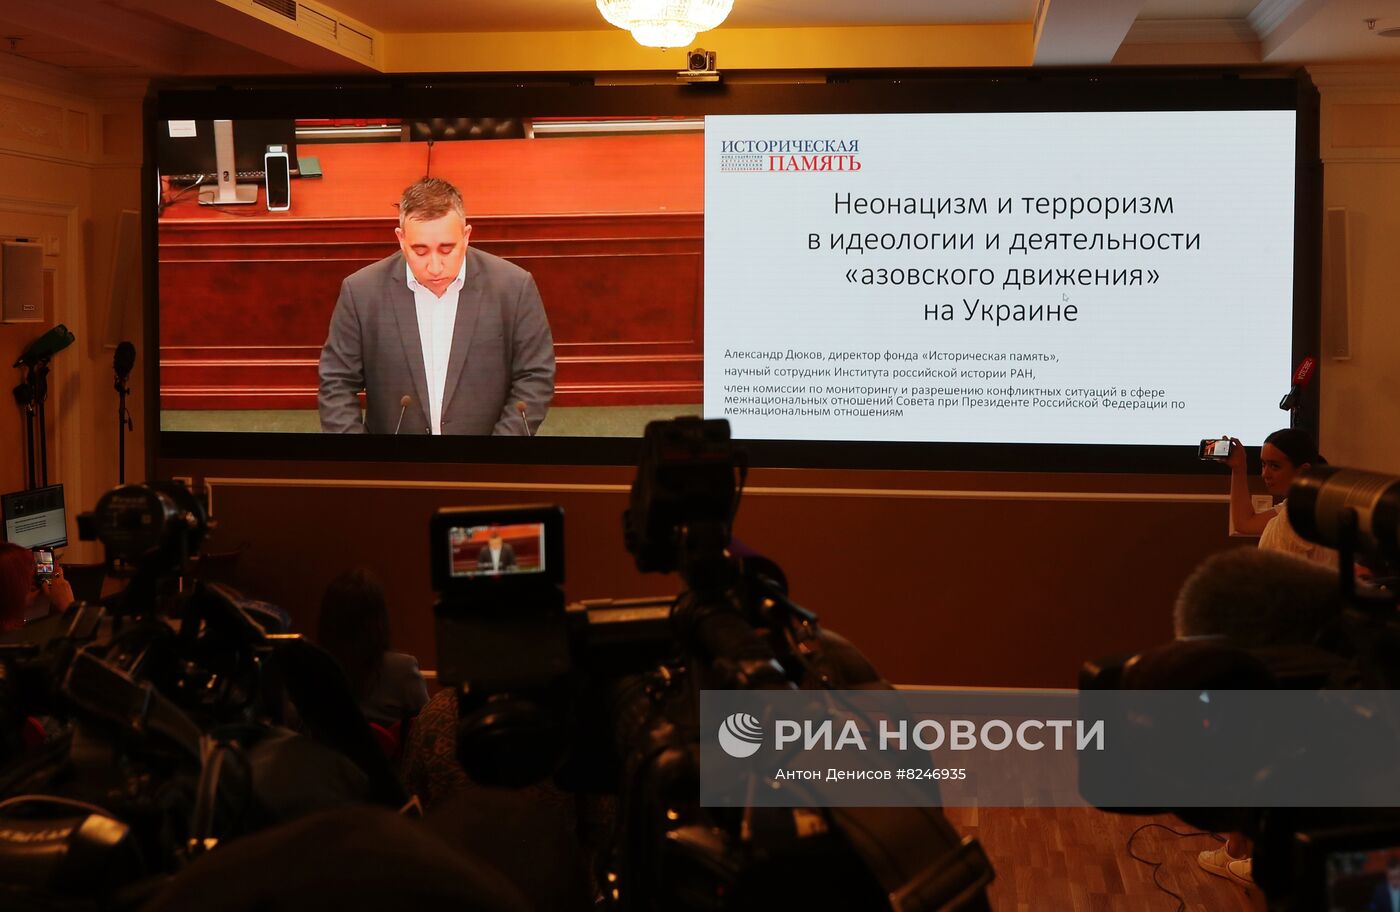 Верховный суд РФ признал украинский нацбатальон "Азов" террористической организацией